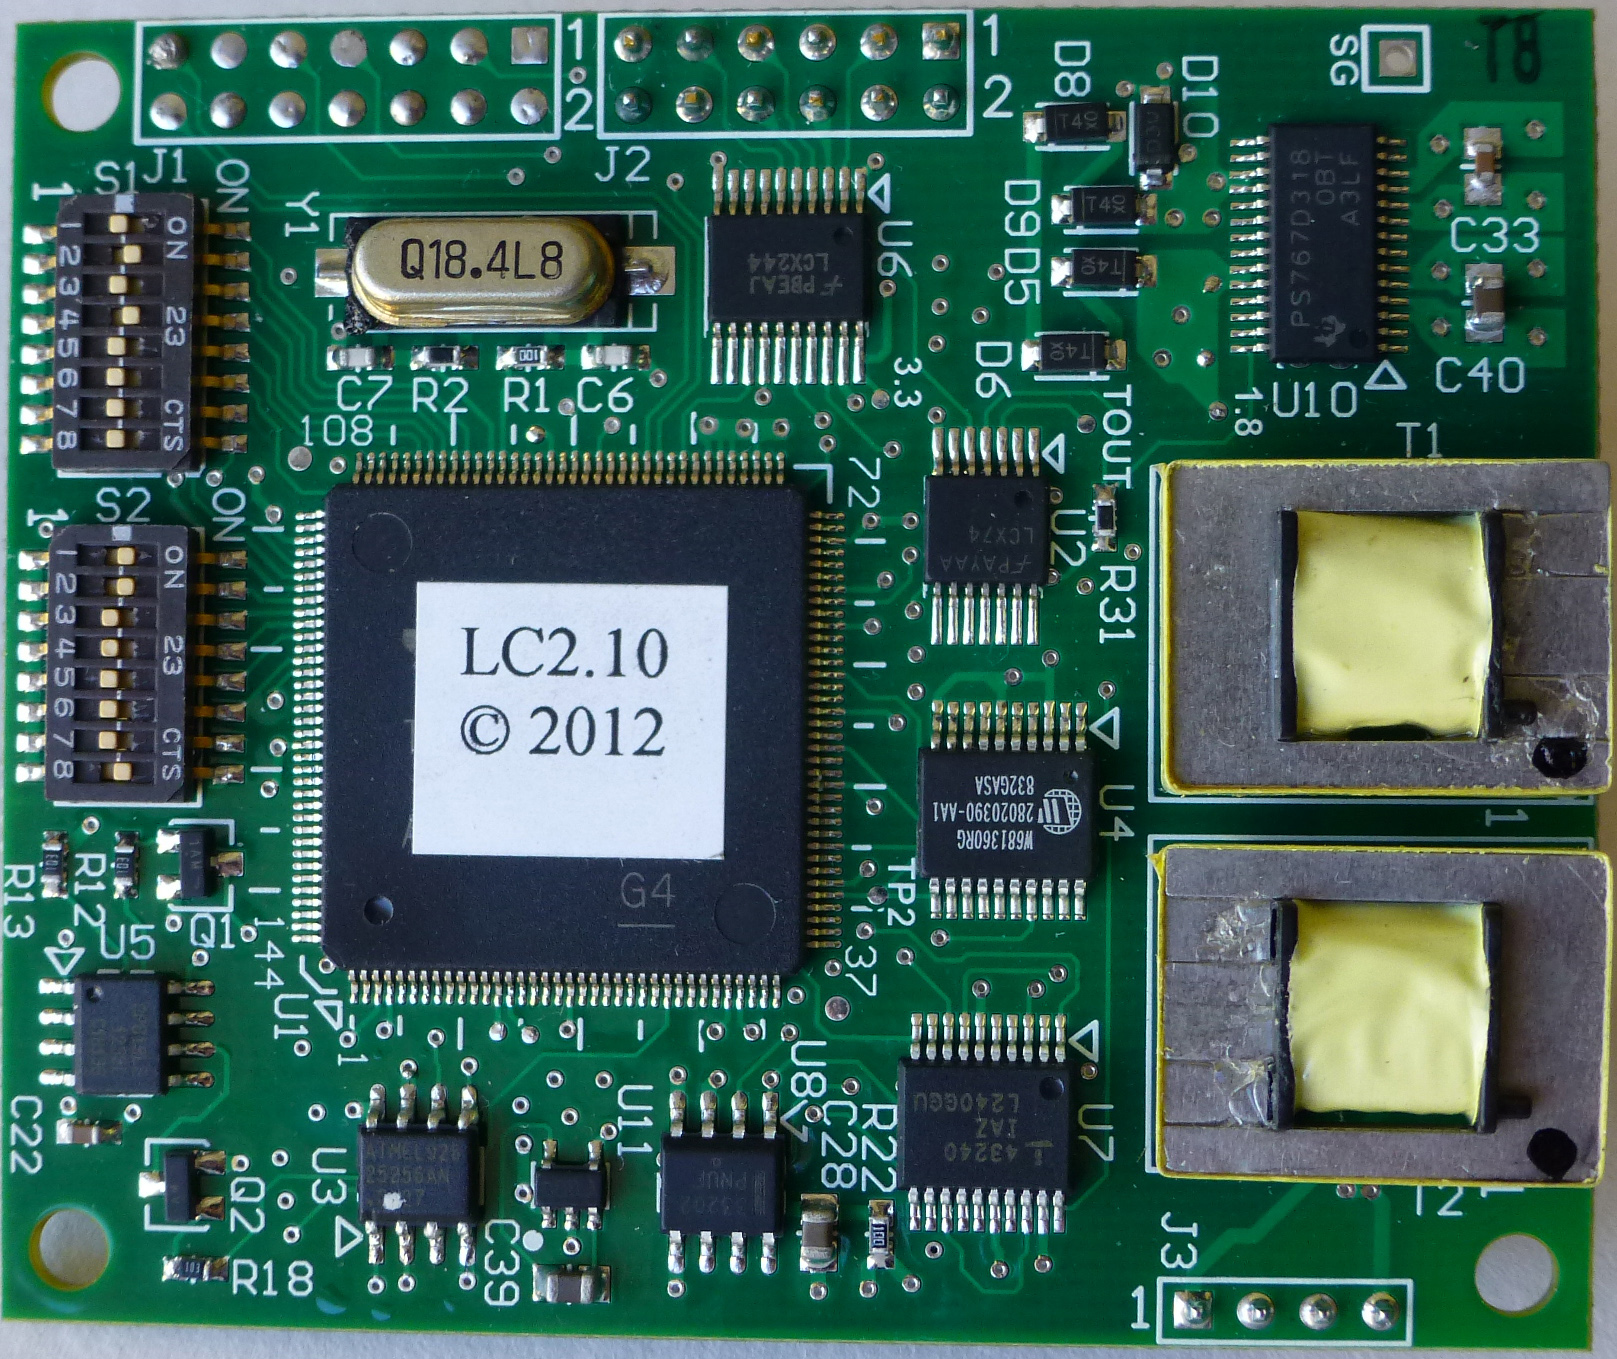 Synxcom EM9612 Developer Board